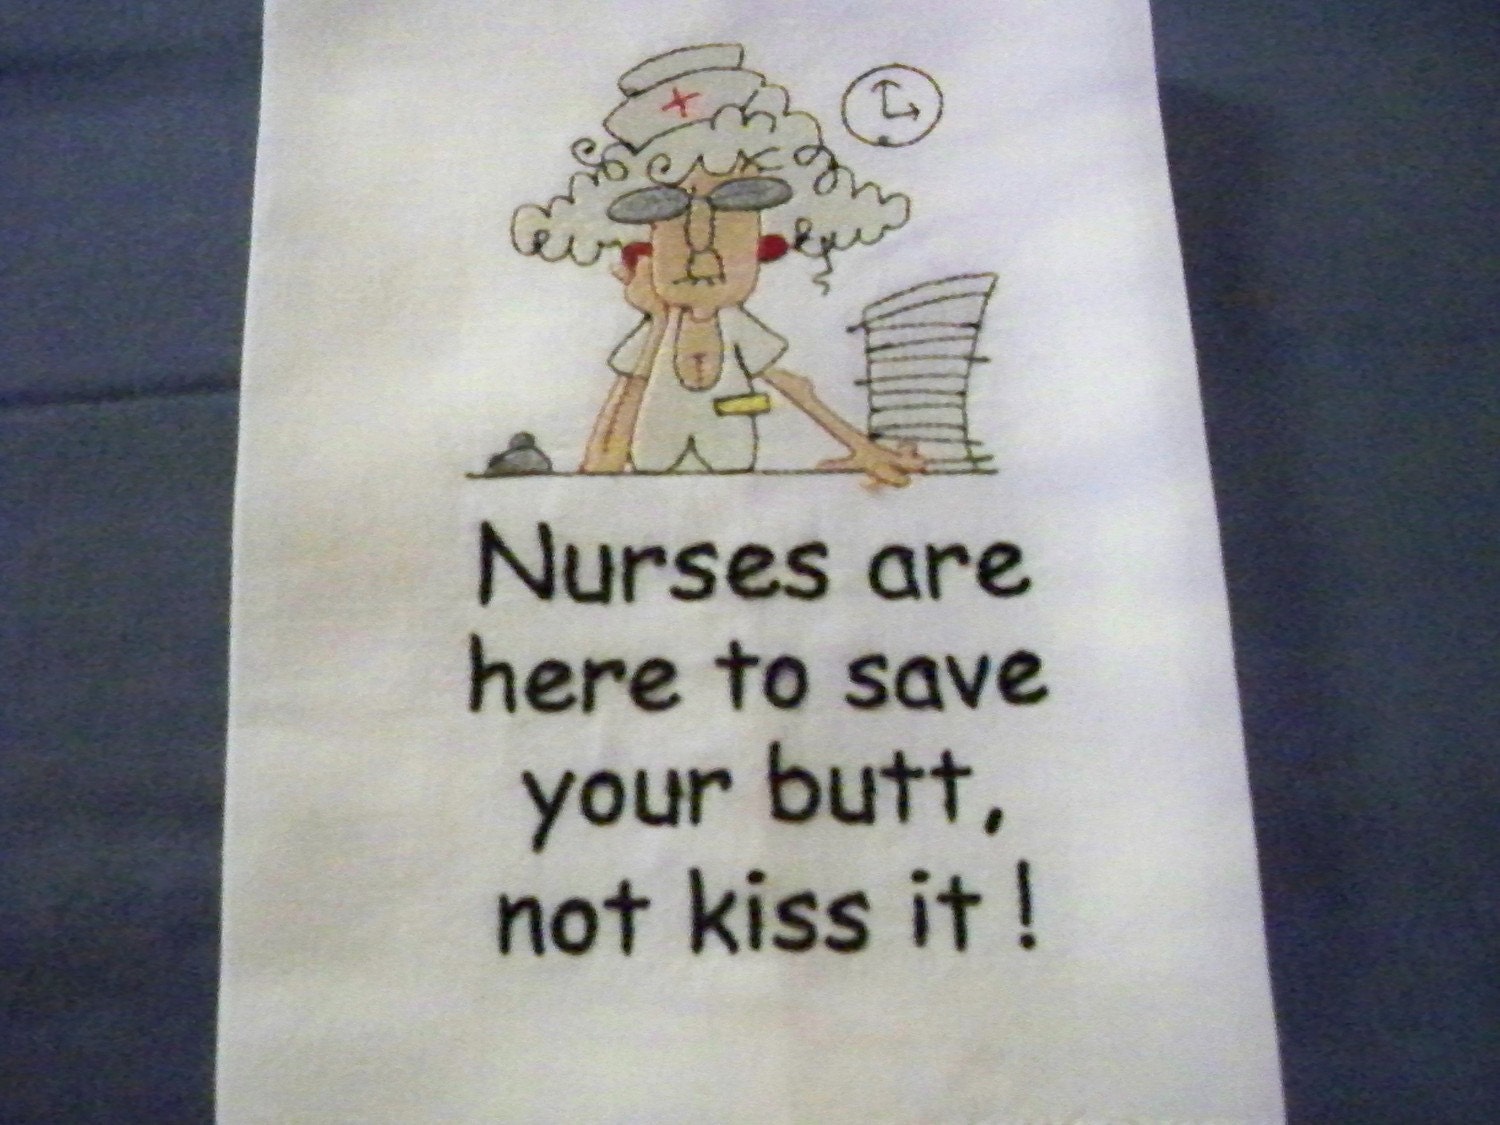 Nurse Humor